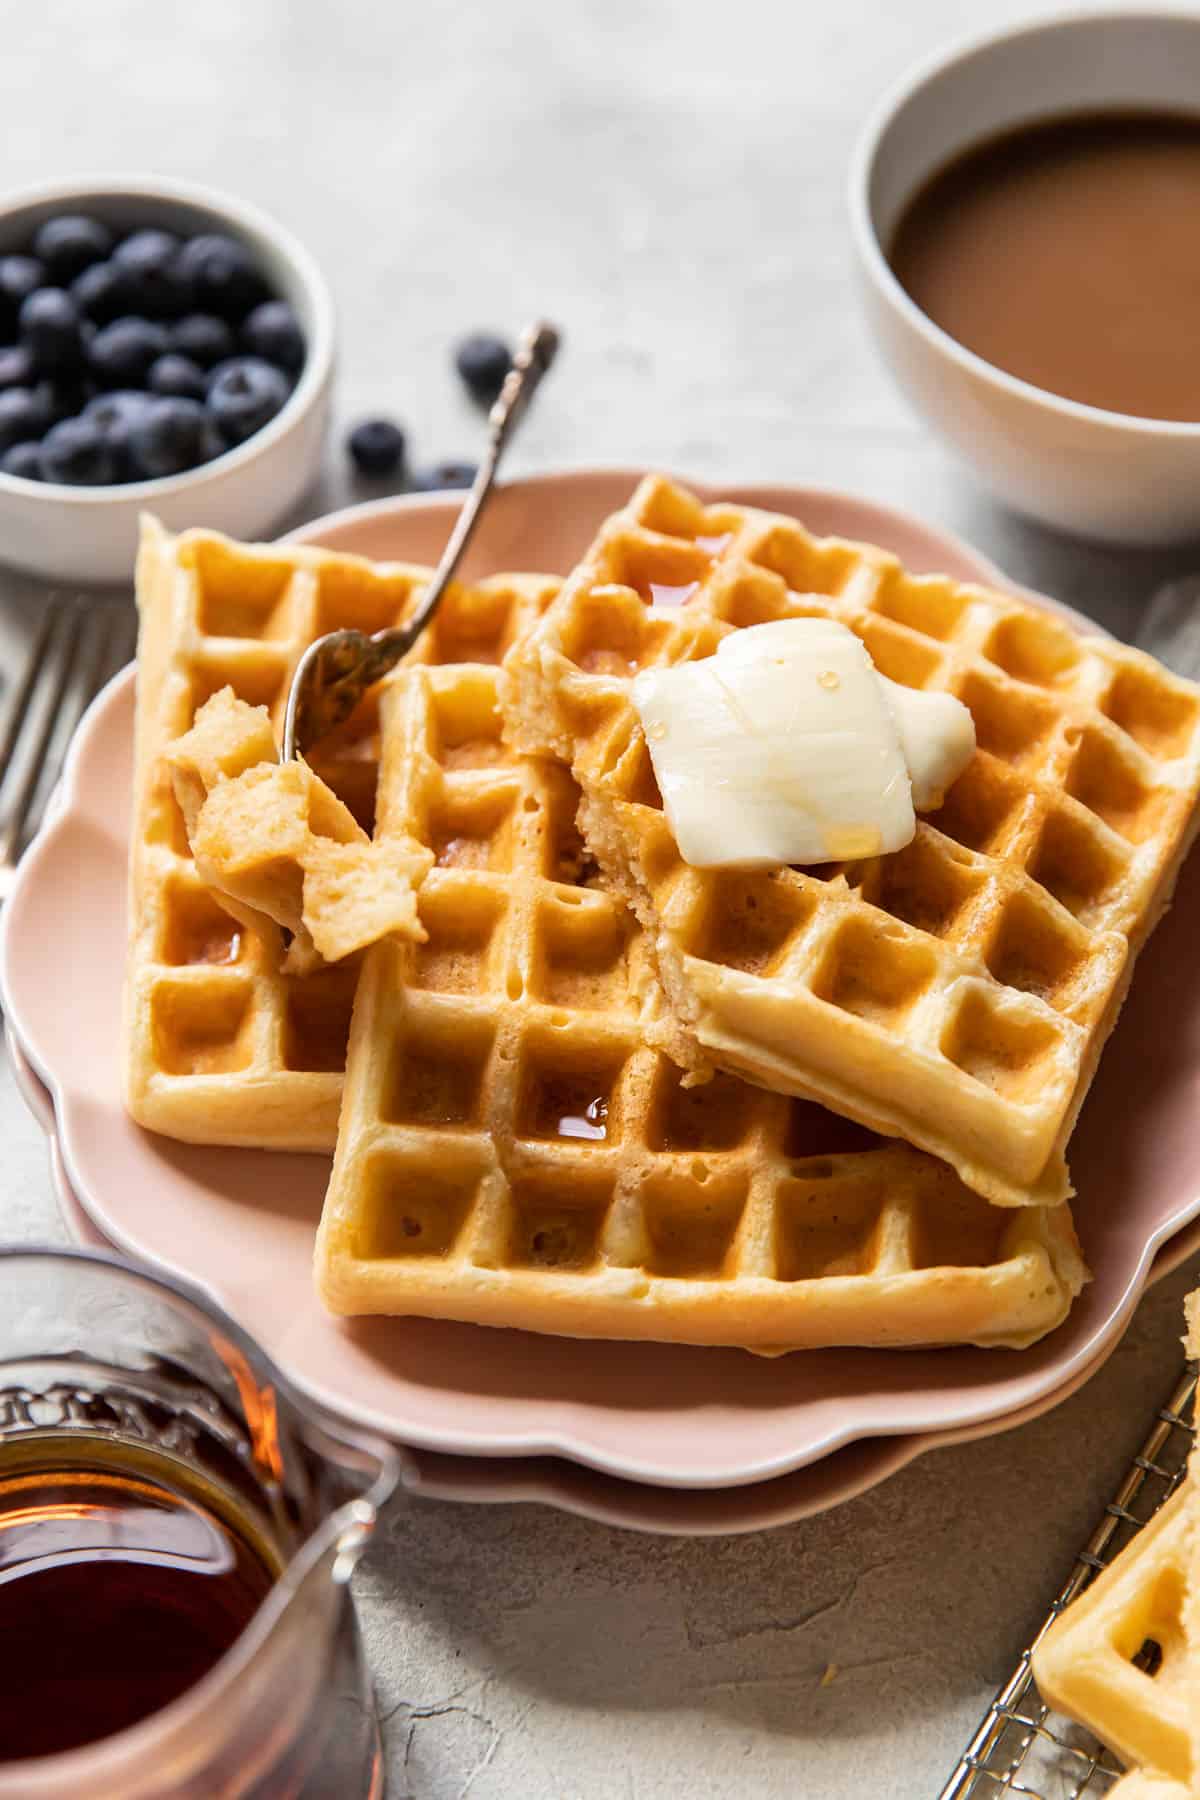 https://moderncrumb.com/wp-content/uploads/2020/03/buttermilk-waffles-6.jpg